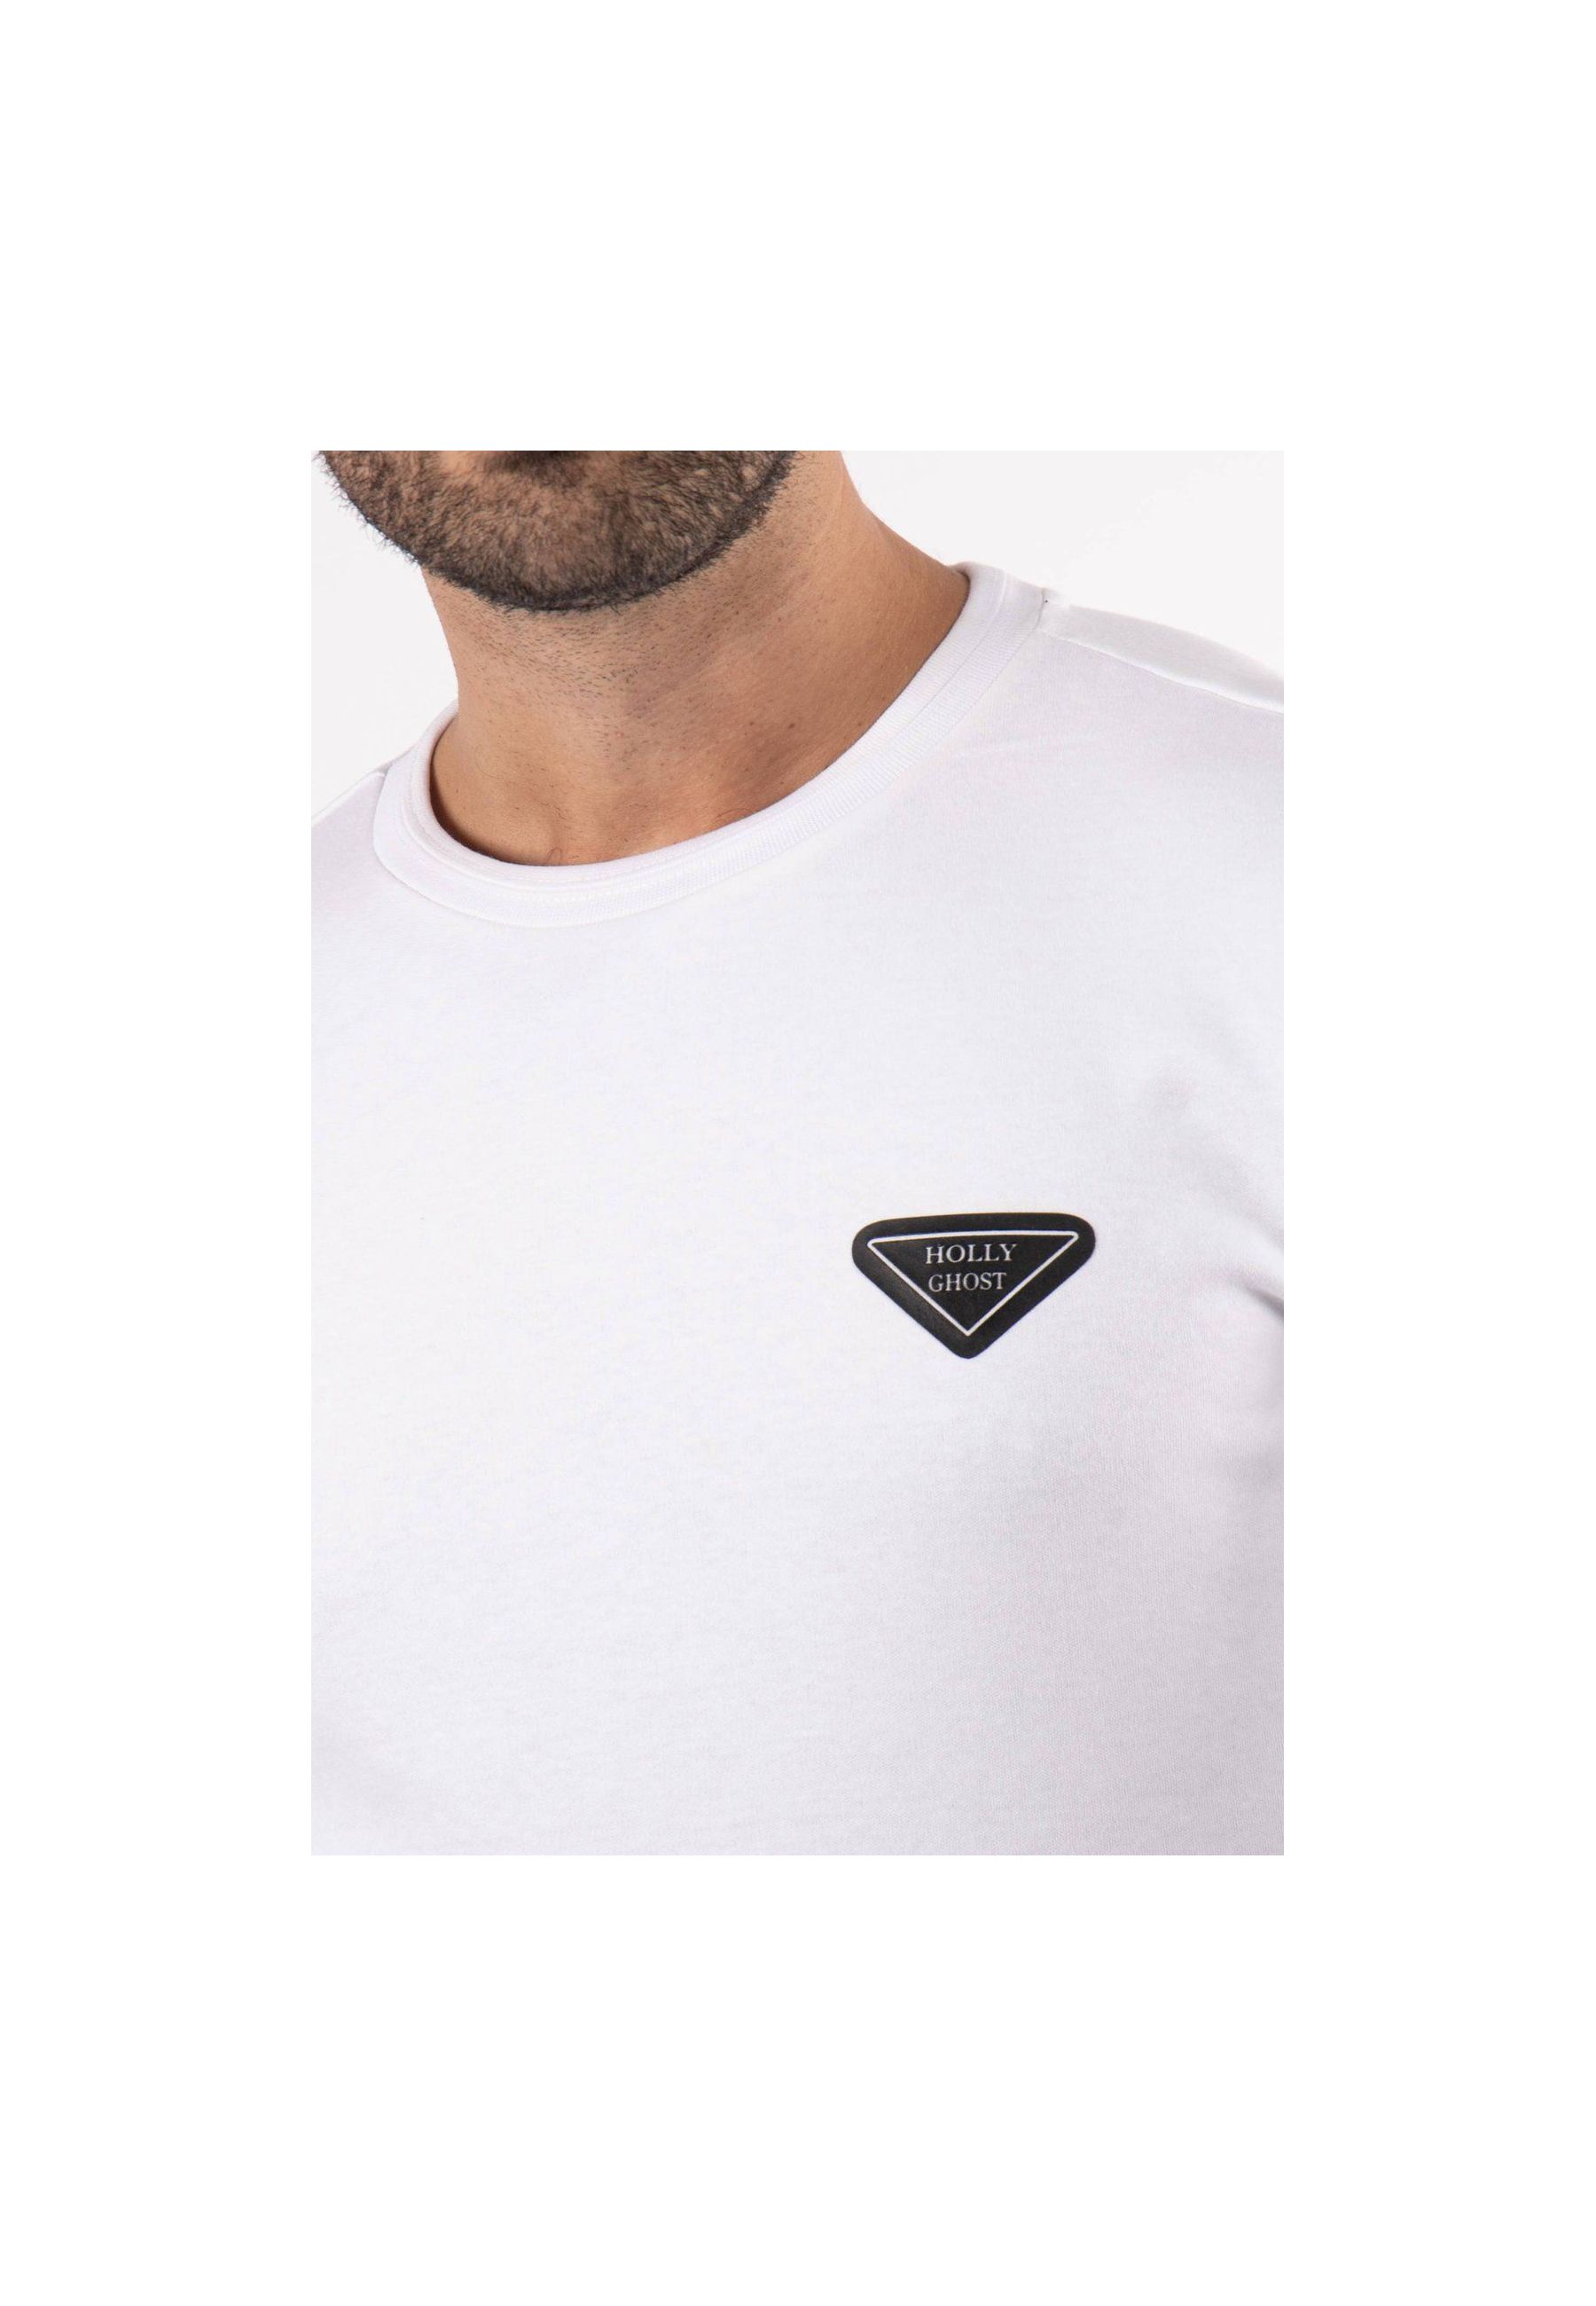 T-shirt blanc avec triangle noir sur poitrine et inscription hollyghost